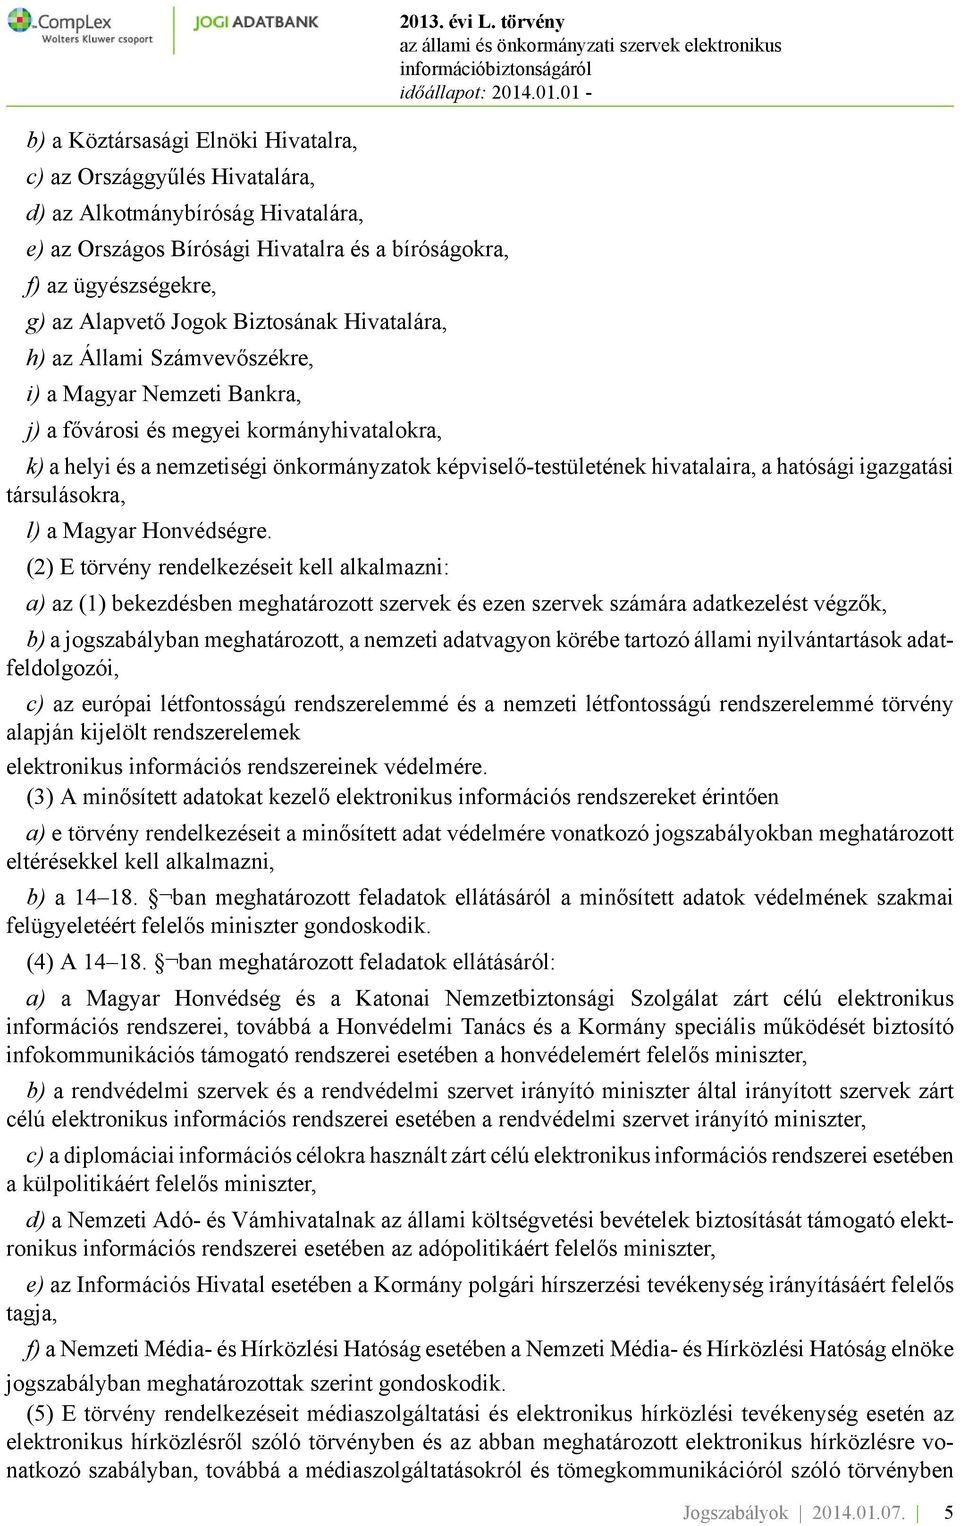 törvény k) a helyi és a nemzetiségi önkormányzatok képviselő-testületének hivatalaira, a hatósági igazgatási társulásokra, l) a Magyar Honvédségre.